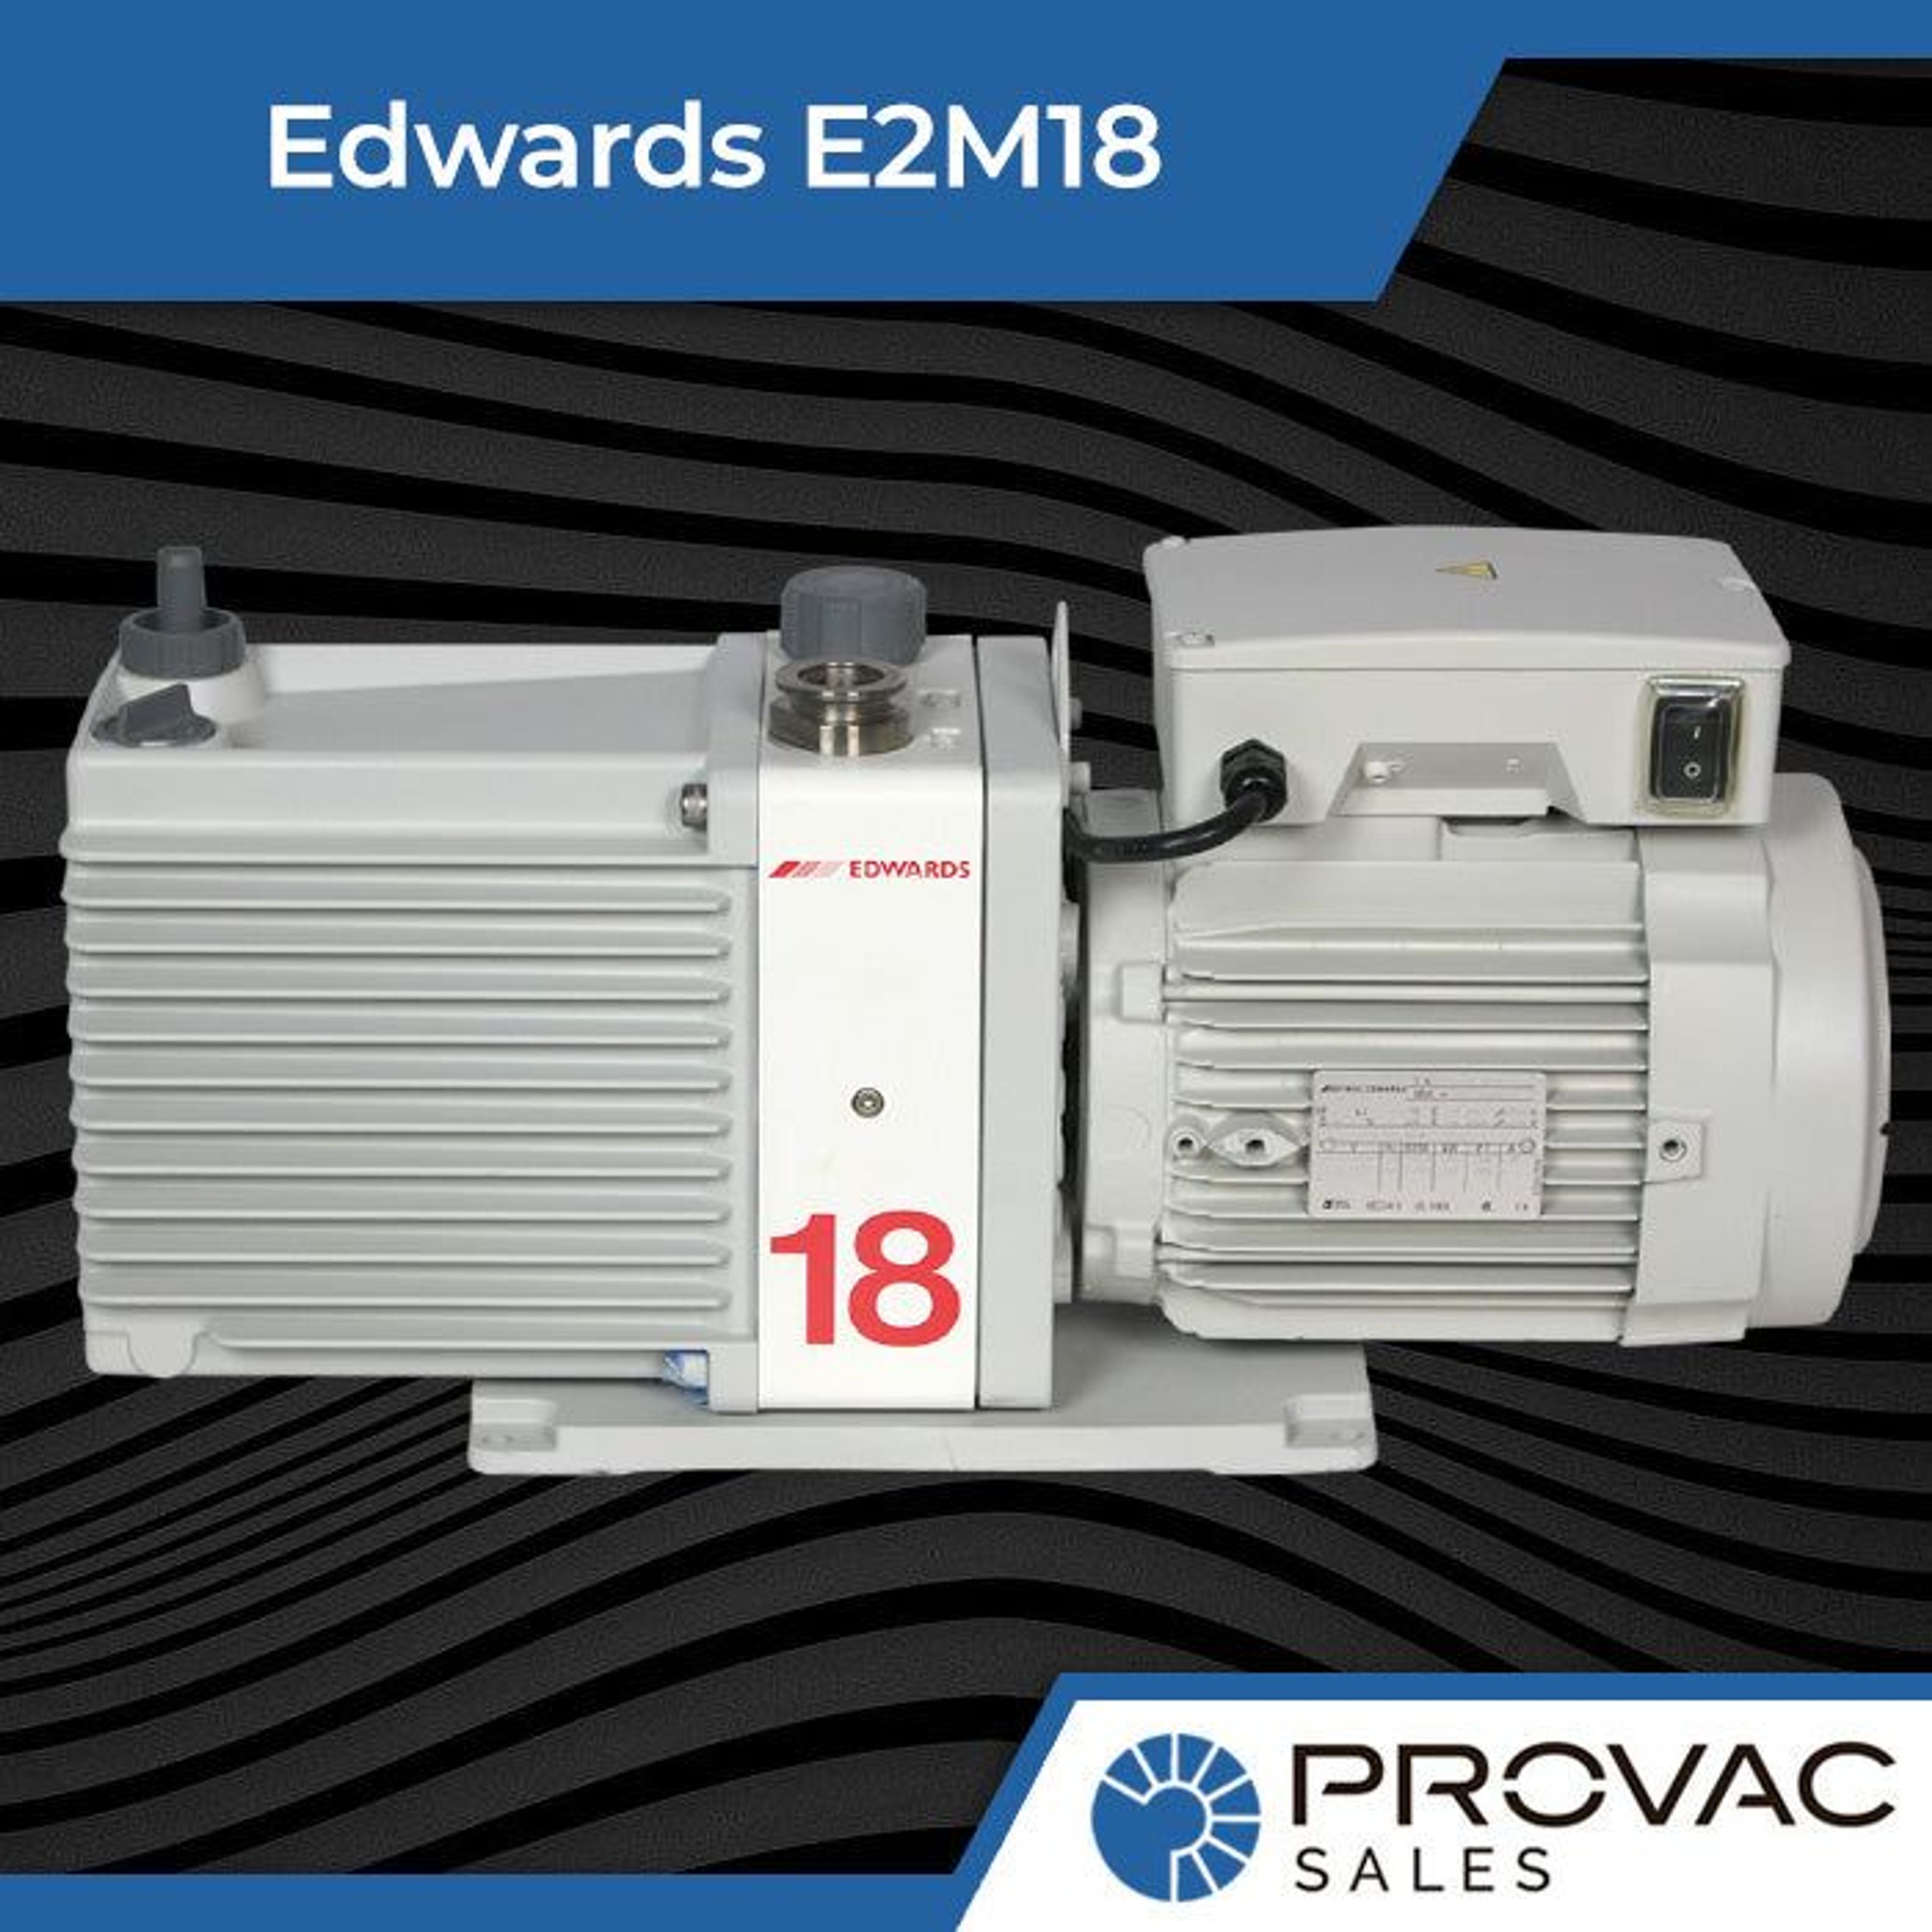 Edwards E2M18 Rotary Vane Pump Background